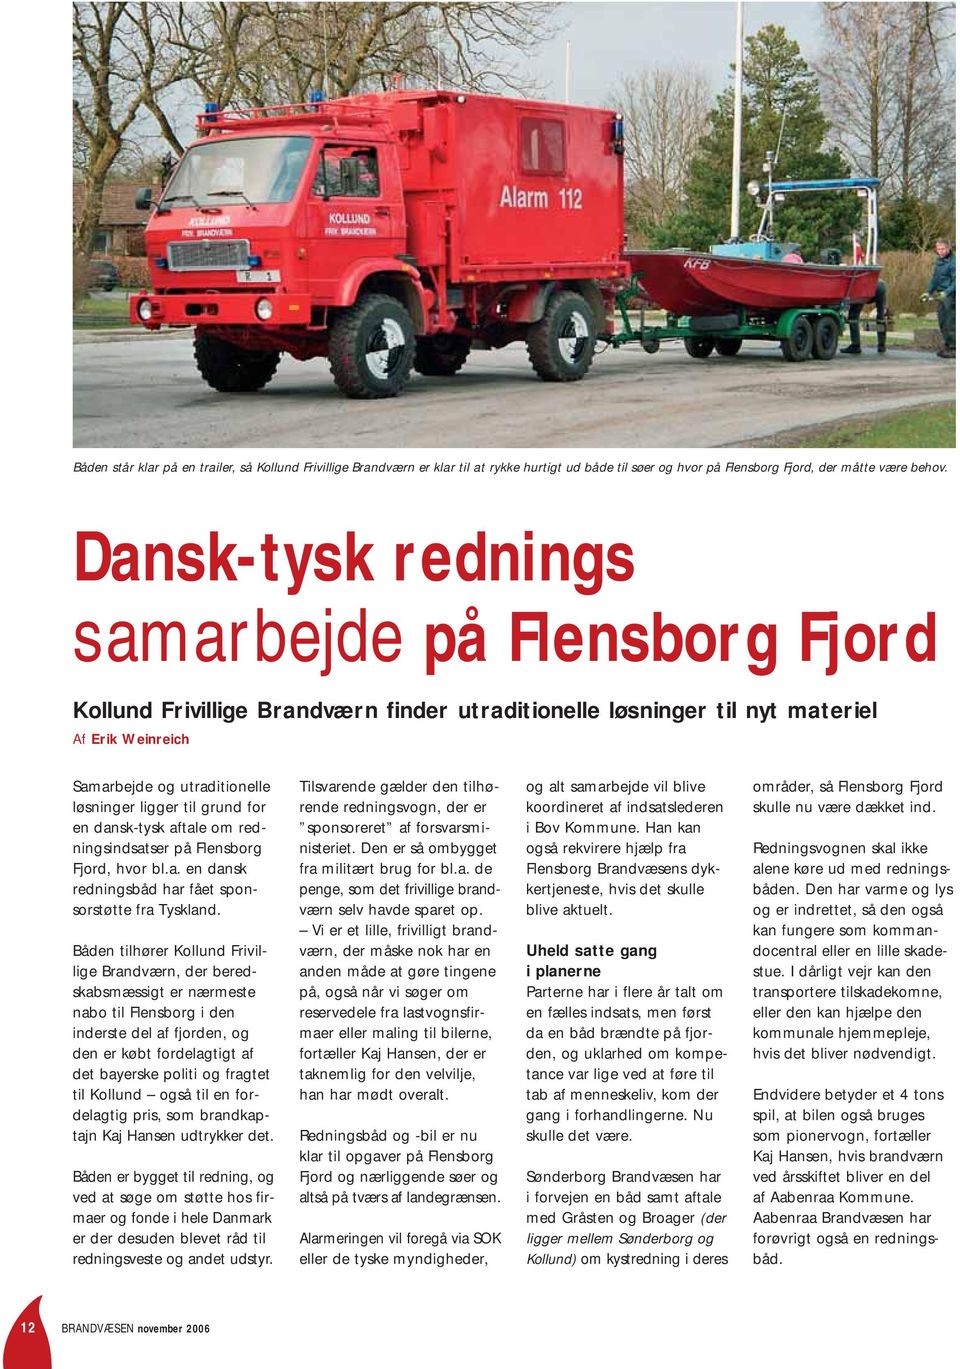 grund for en dansk-tysk aftale om redningsindsatser på Flensborg Fjord, hvor bl.a. en dansk redningsbåd har fået sponsorstøtte fra Tyskland.